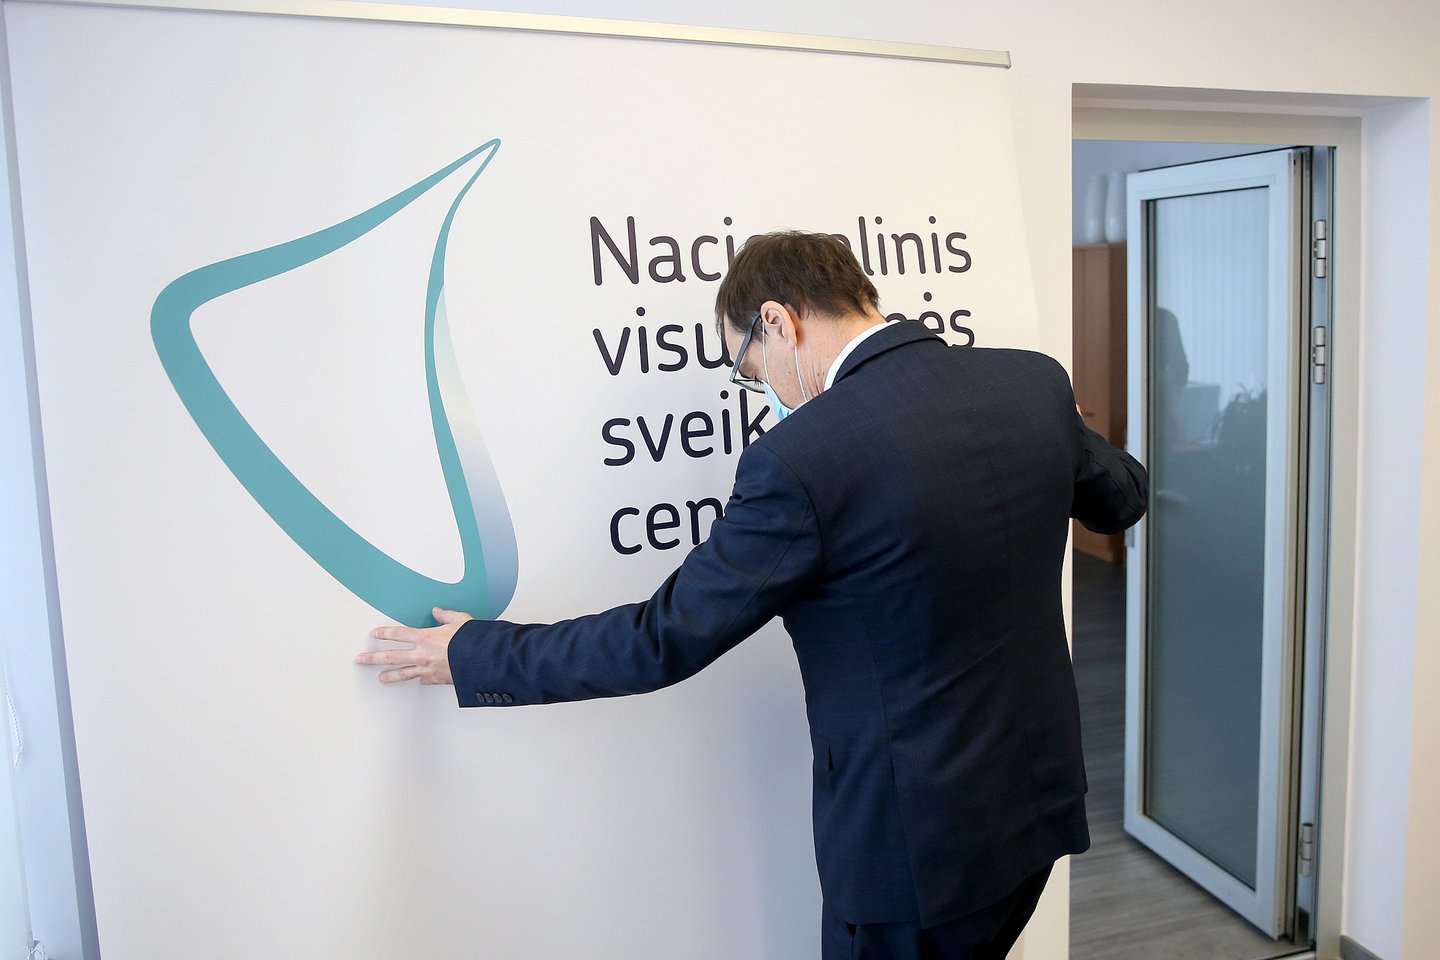 Nacionalinio visuomenės sveikatos centro (NVSC) vadovas Robertas Petraitis nesutinka su tarnybinio patikrinimo išvadomis.<br>R.Danisevičiaus nuotr.